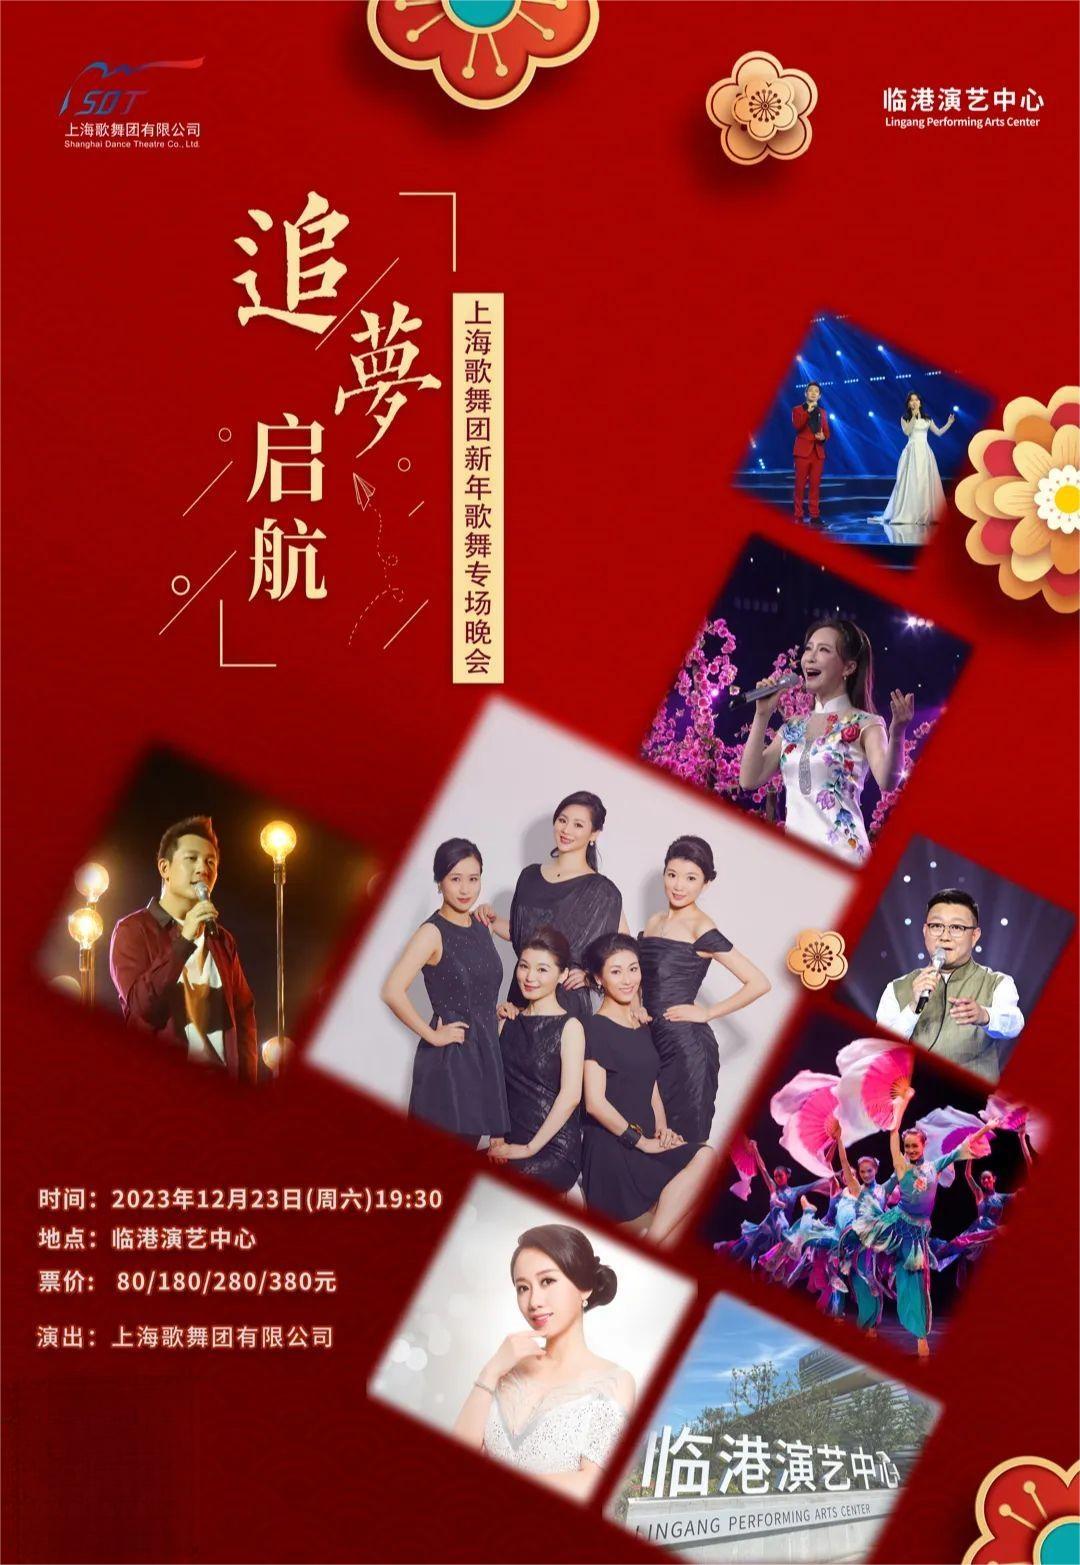 【上海】 追梦启航 · 上海歌舞团新年歌舞专场晚会